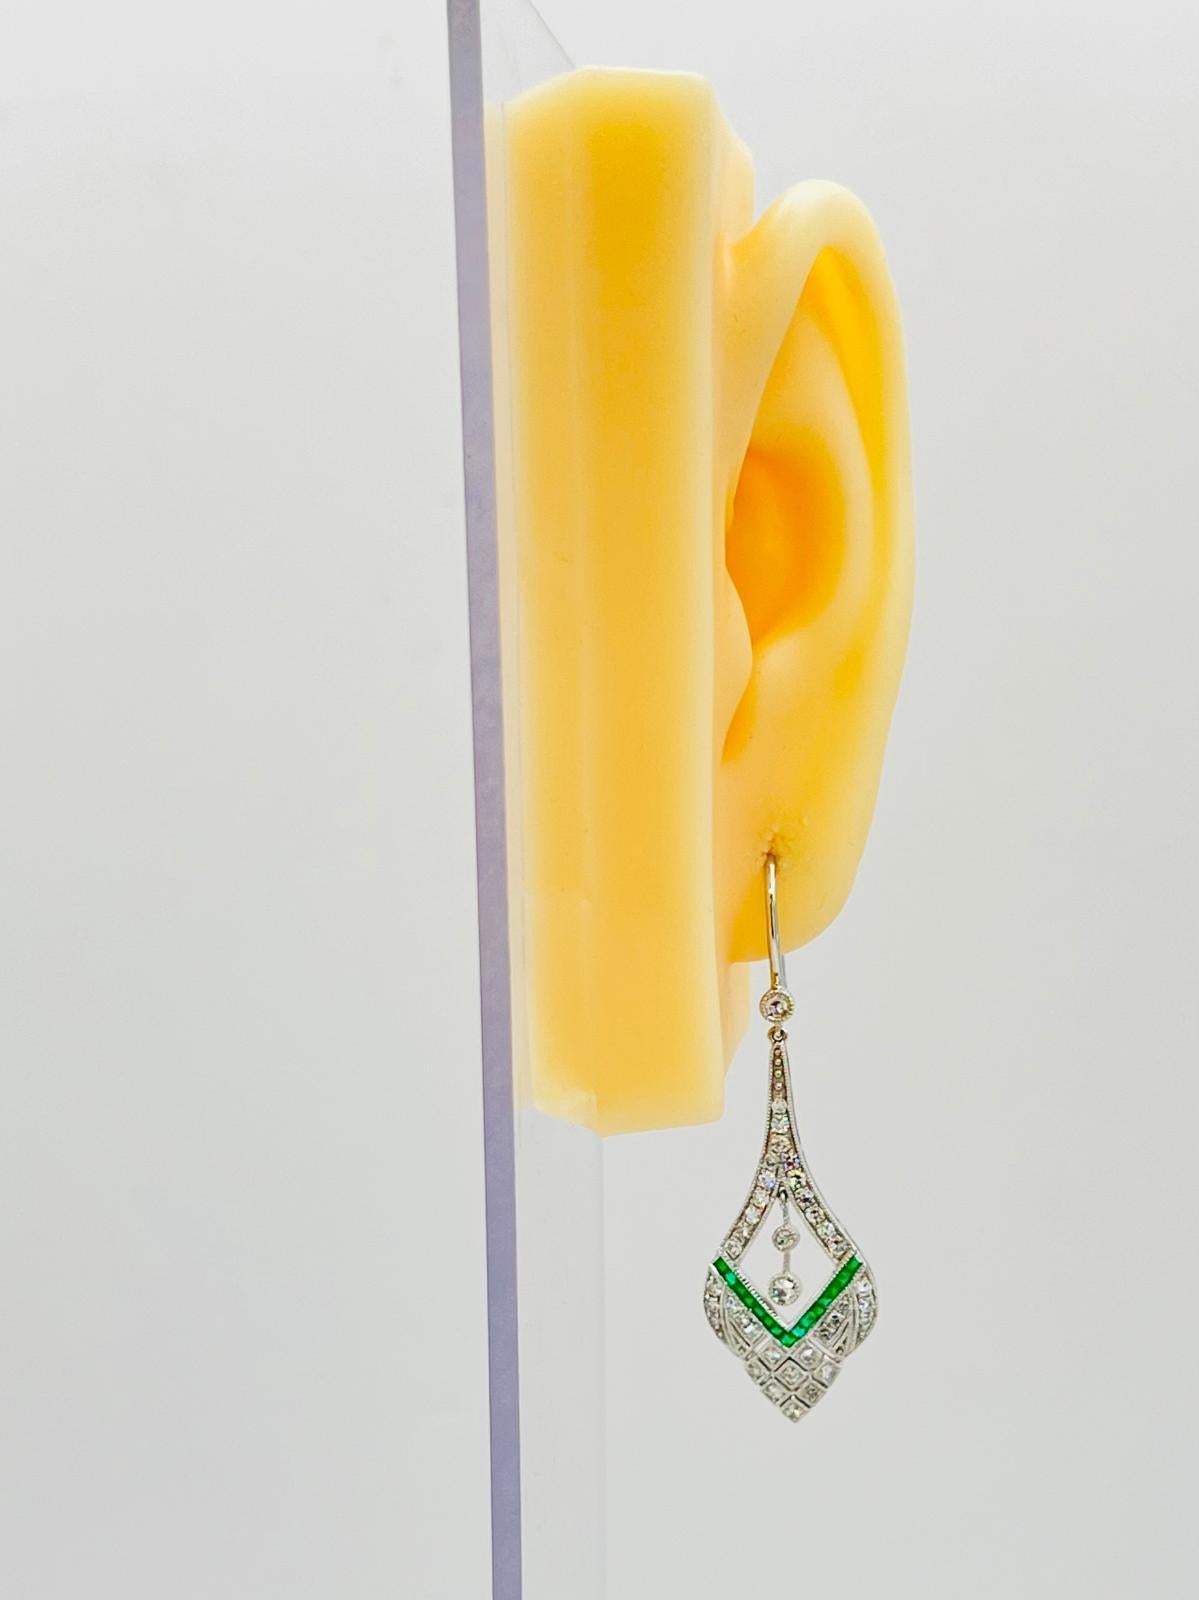 Schöne 1,09 ct. weiße Diamanten von guter Qualität und 0,42 ct. smaragdgrüne Quadrate.  Handgefertigt aus Platin, Push-Back-Fassung.  Diese Ohrringe im Estate-Look sind leicht und eine tolle Ergänzung für jede Schmucksammlung!